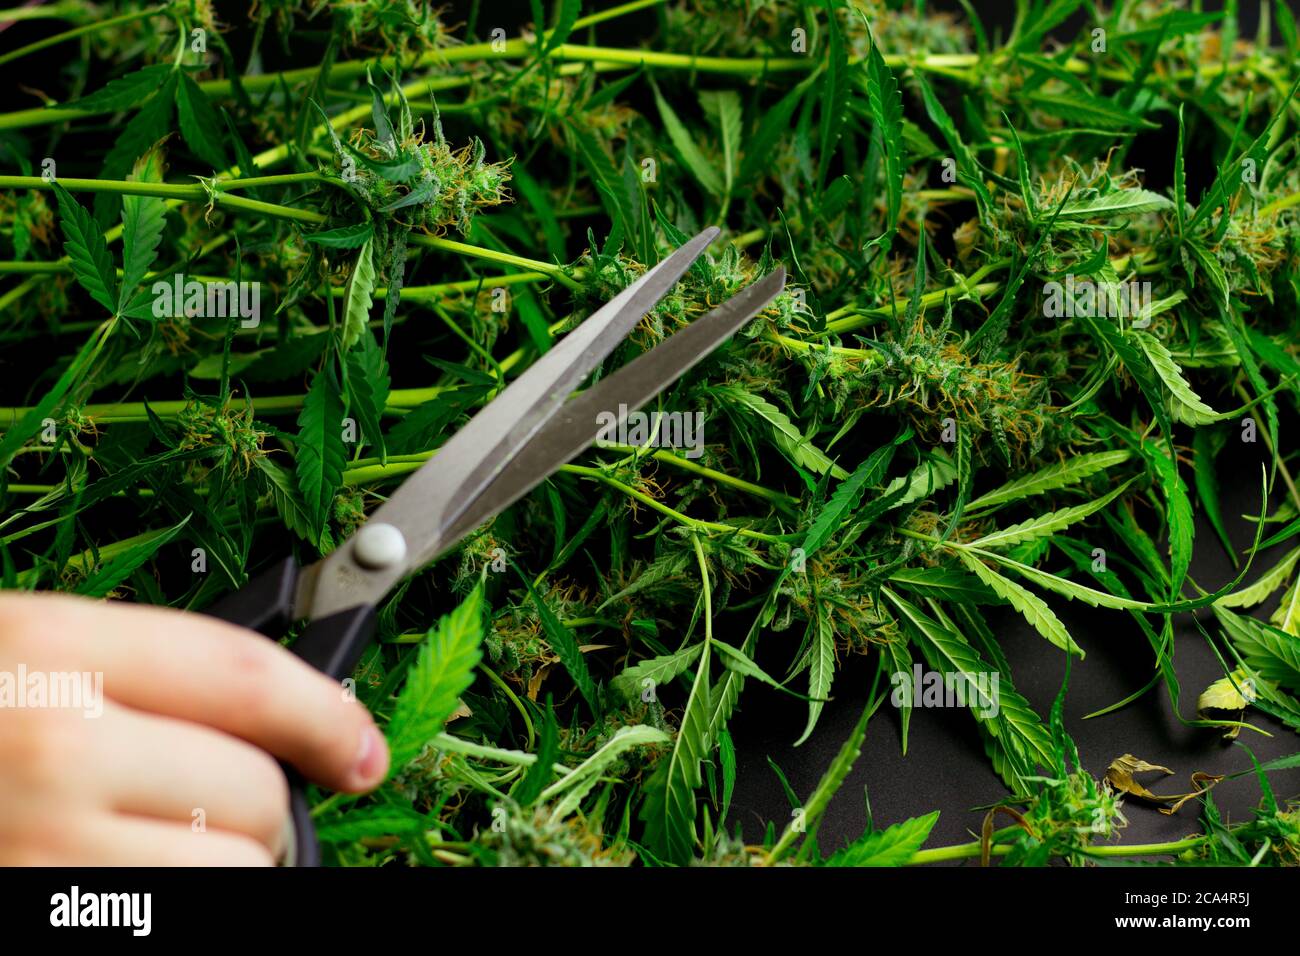 Hombre mano con tijeras de cortar plantas de malas hierbas. Ciruela de cannabis. Industria de la marihuana comercial. Procesamiento de THC Foto de stock